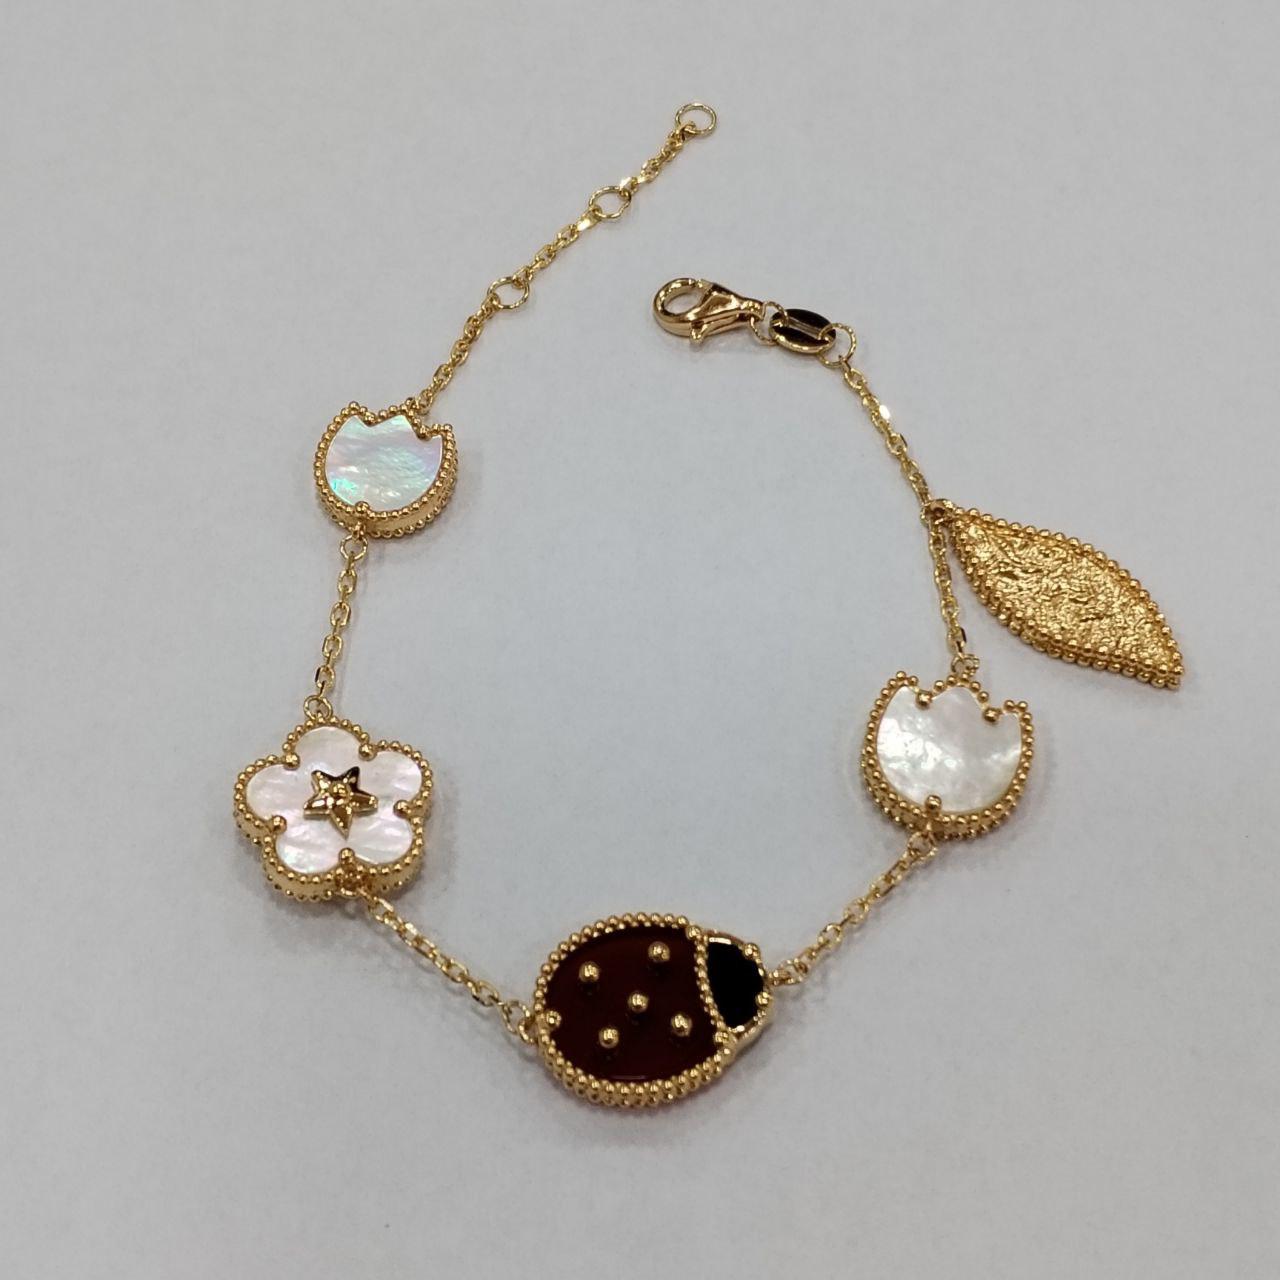 22K / 916 Gold Lady Bug VC bracelet-Bracelets-Best Gold Shop